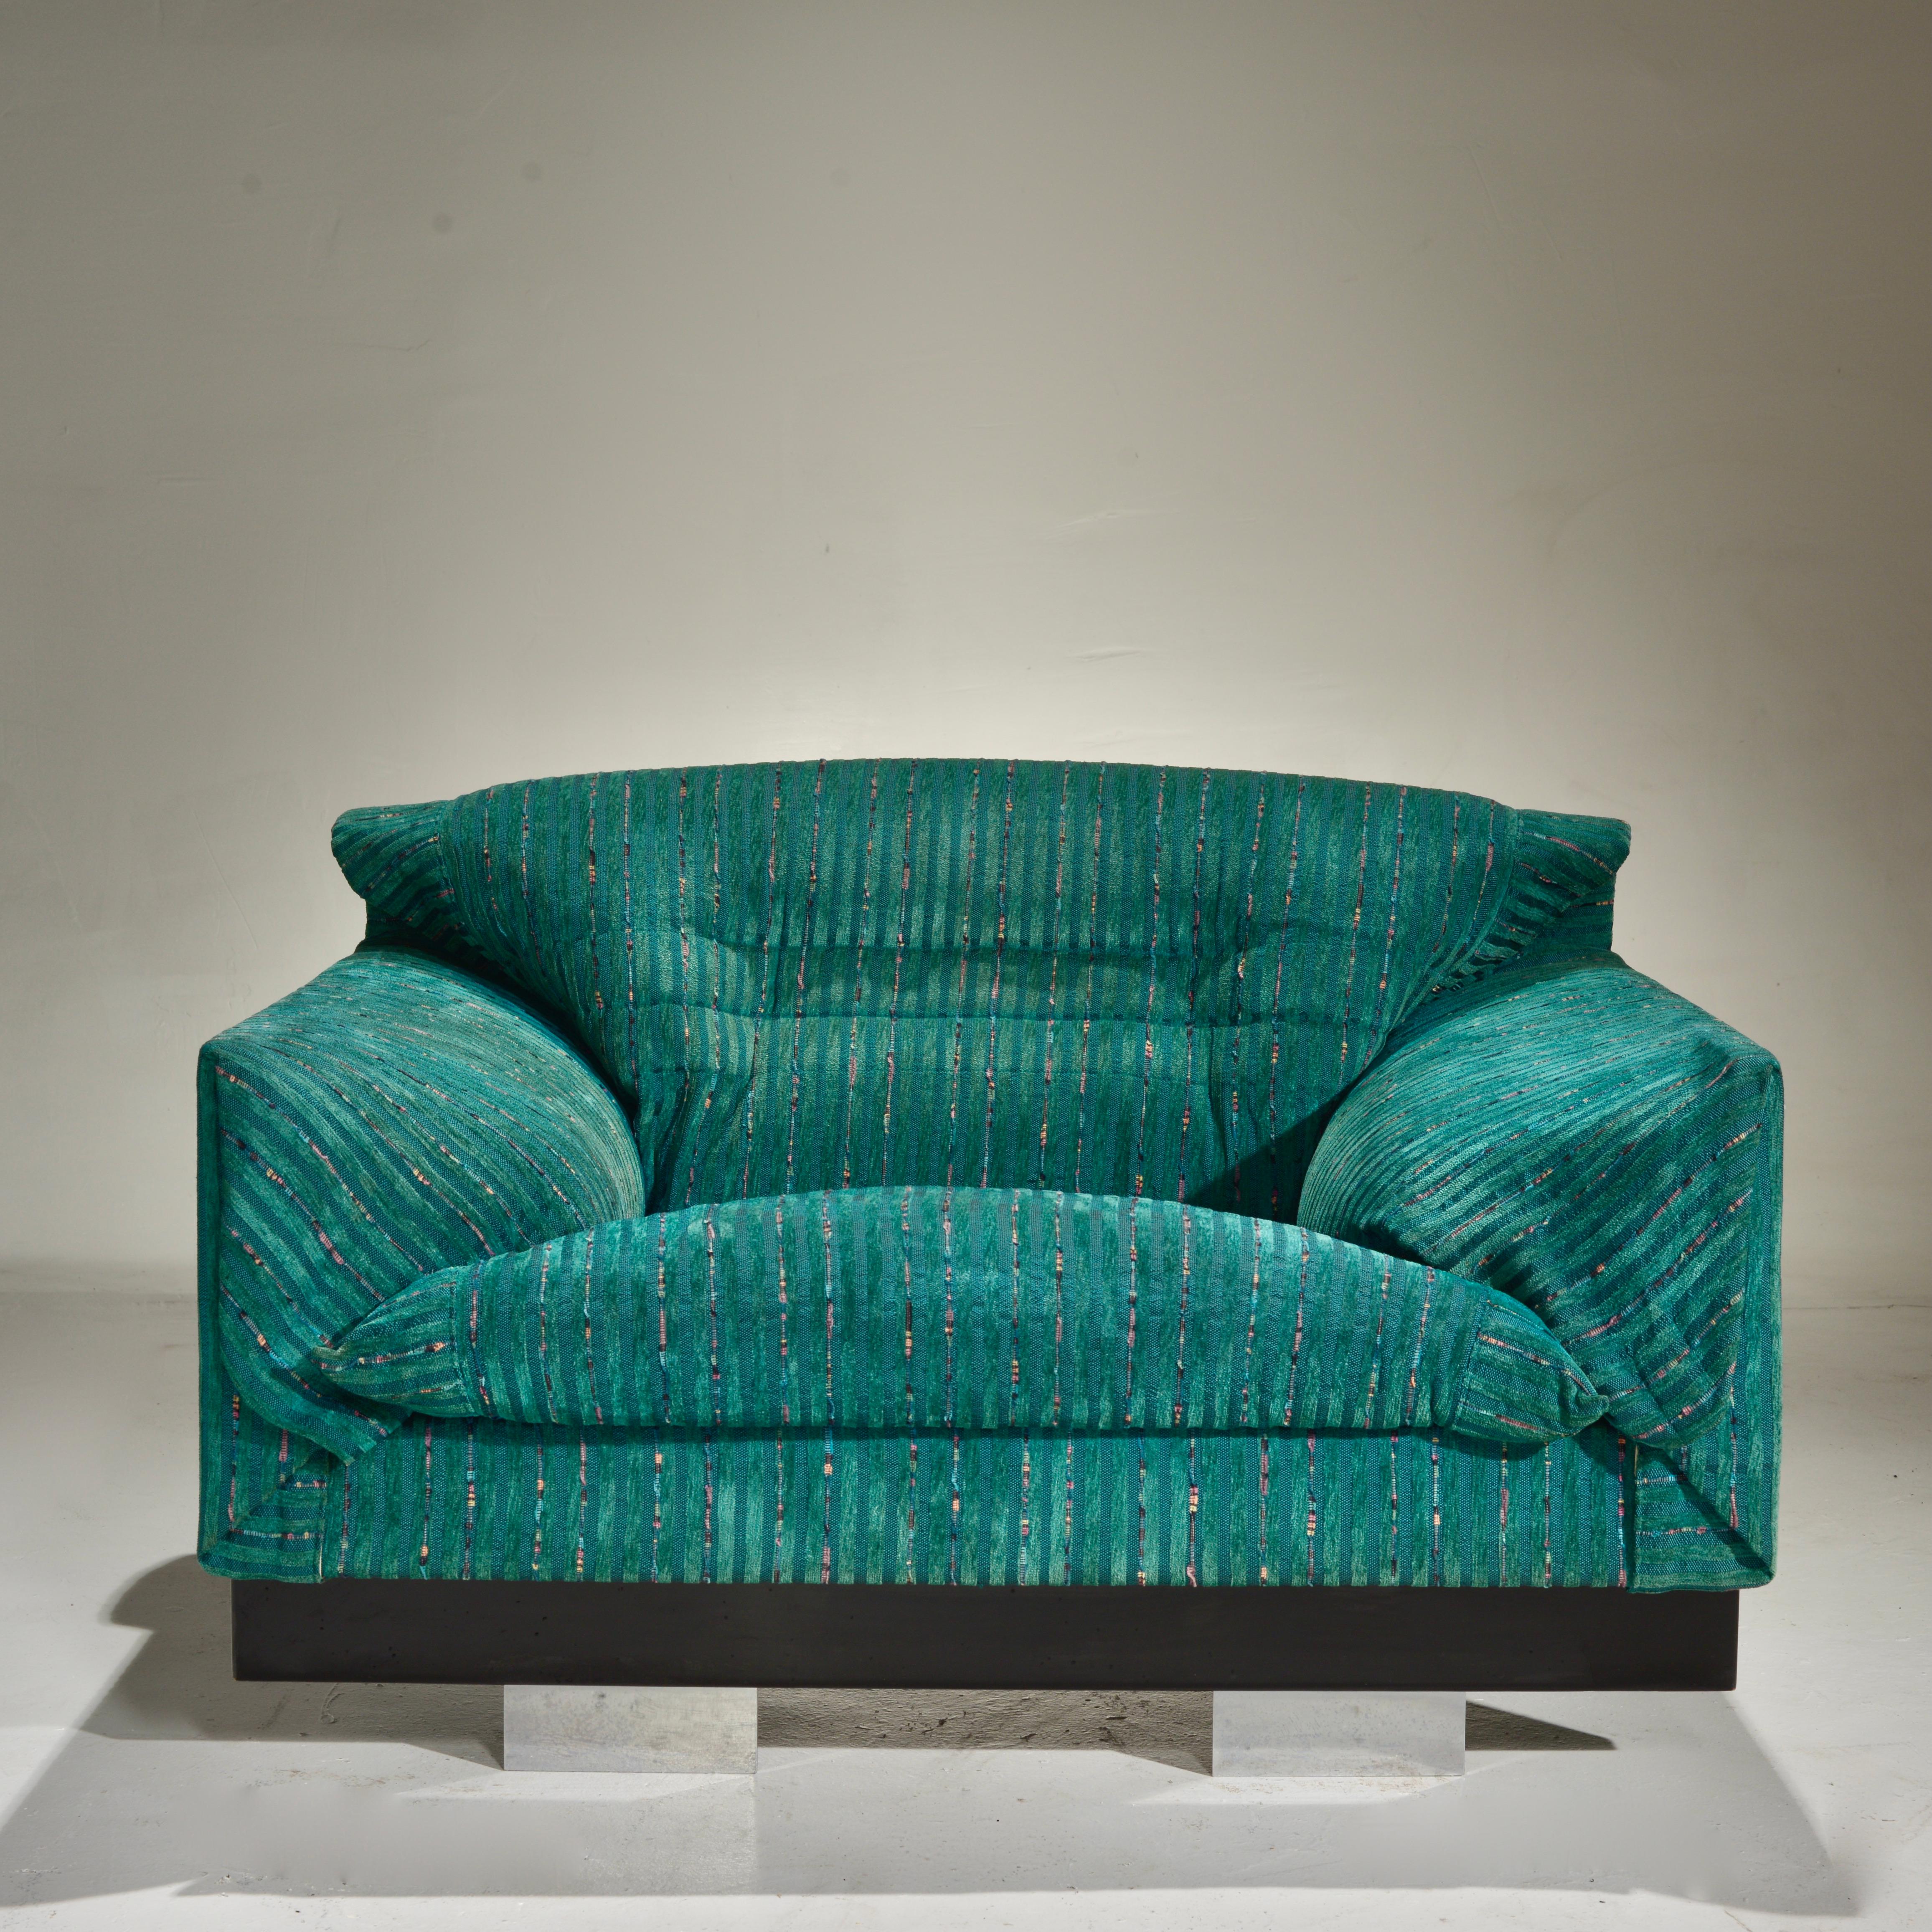 Monumentale und sehr seltene Loungesessel des italienischen Designers Vittorio Introini für Saporiti, um 1970. Der originale farbige, grafisch gemusterte meergrüne Stoffbezug ist in gutem Zustand mit altersgemäßem Ausbleichen.
 